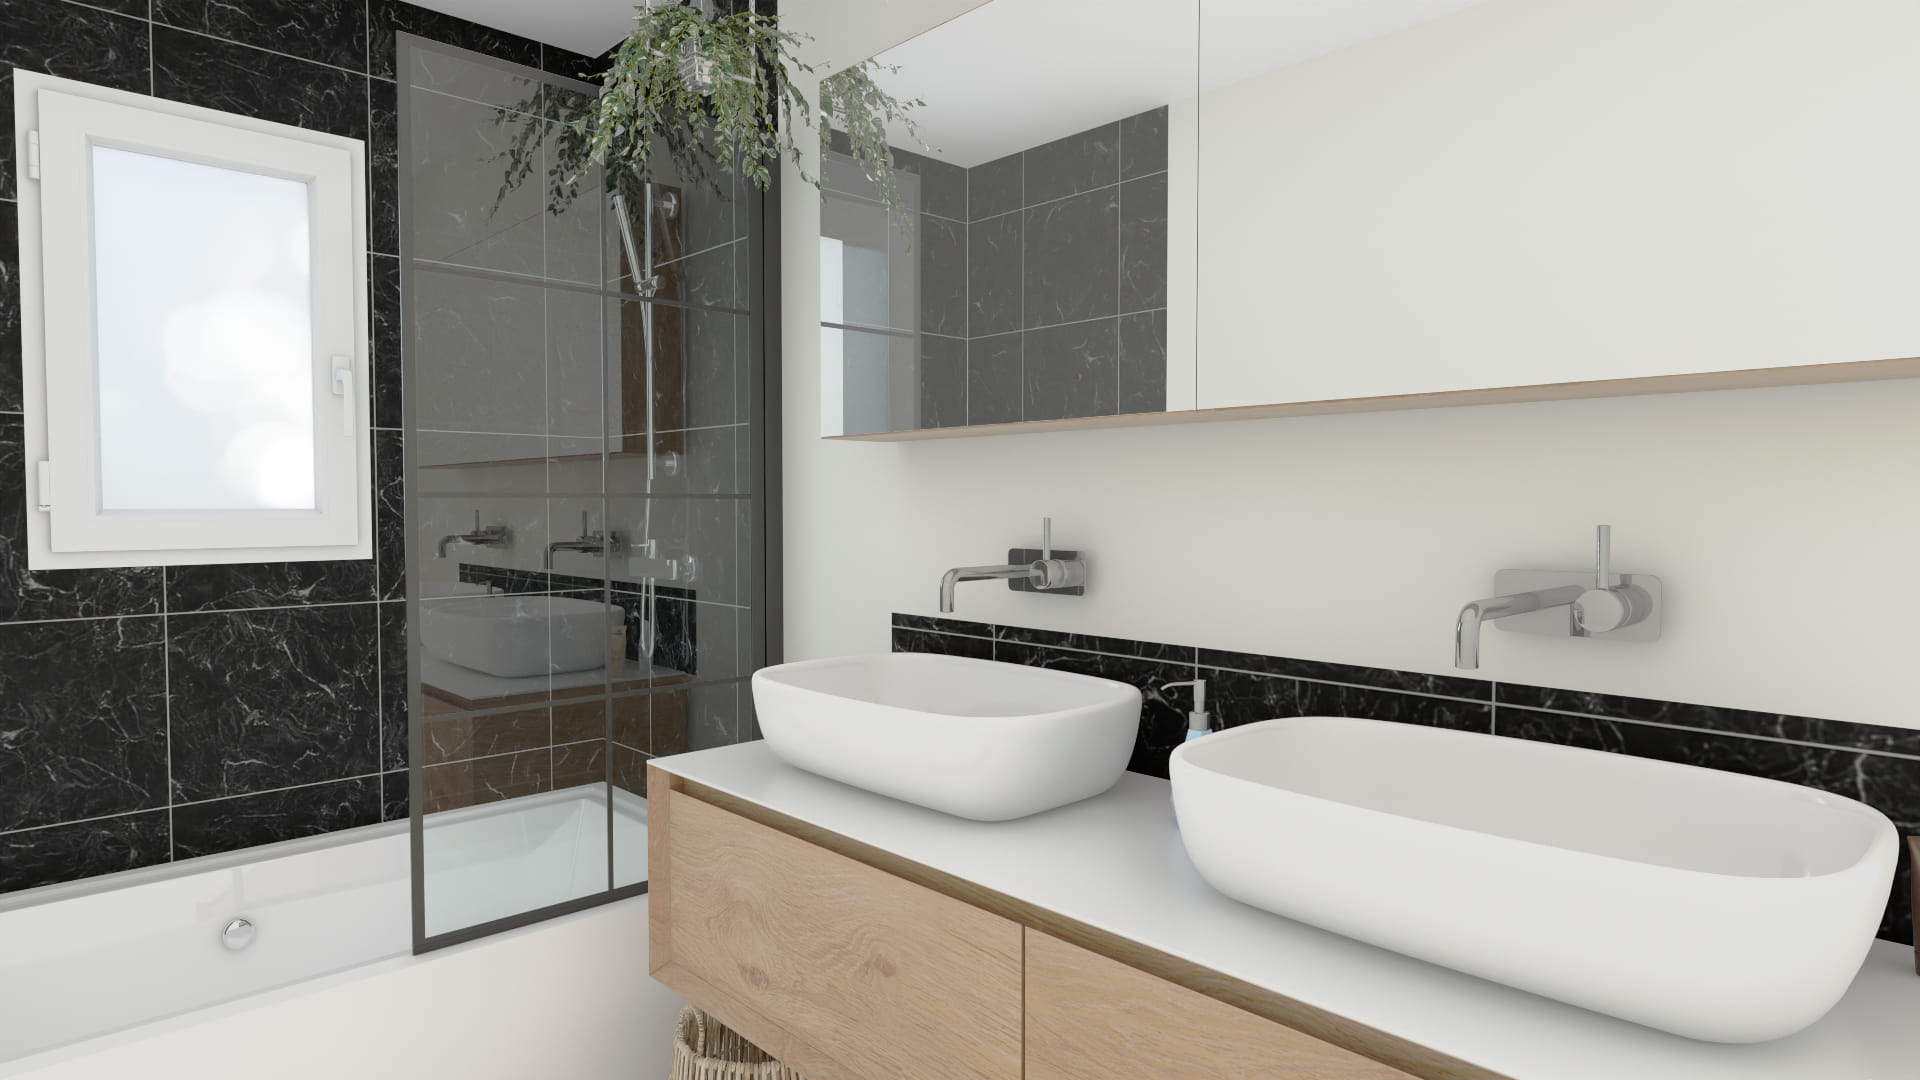 Salle de bain moderne épurée vasques doubles design élégant